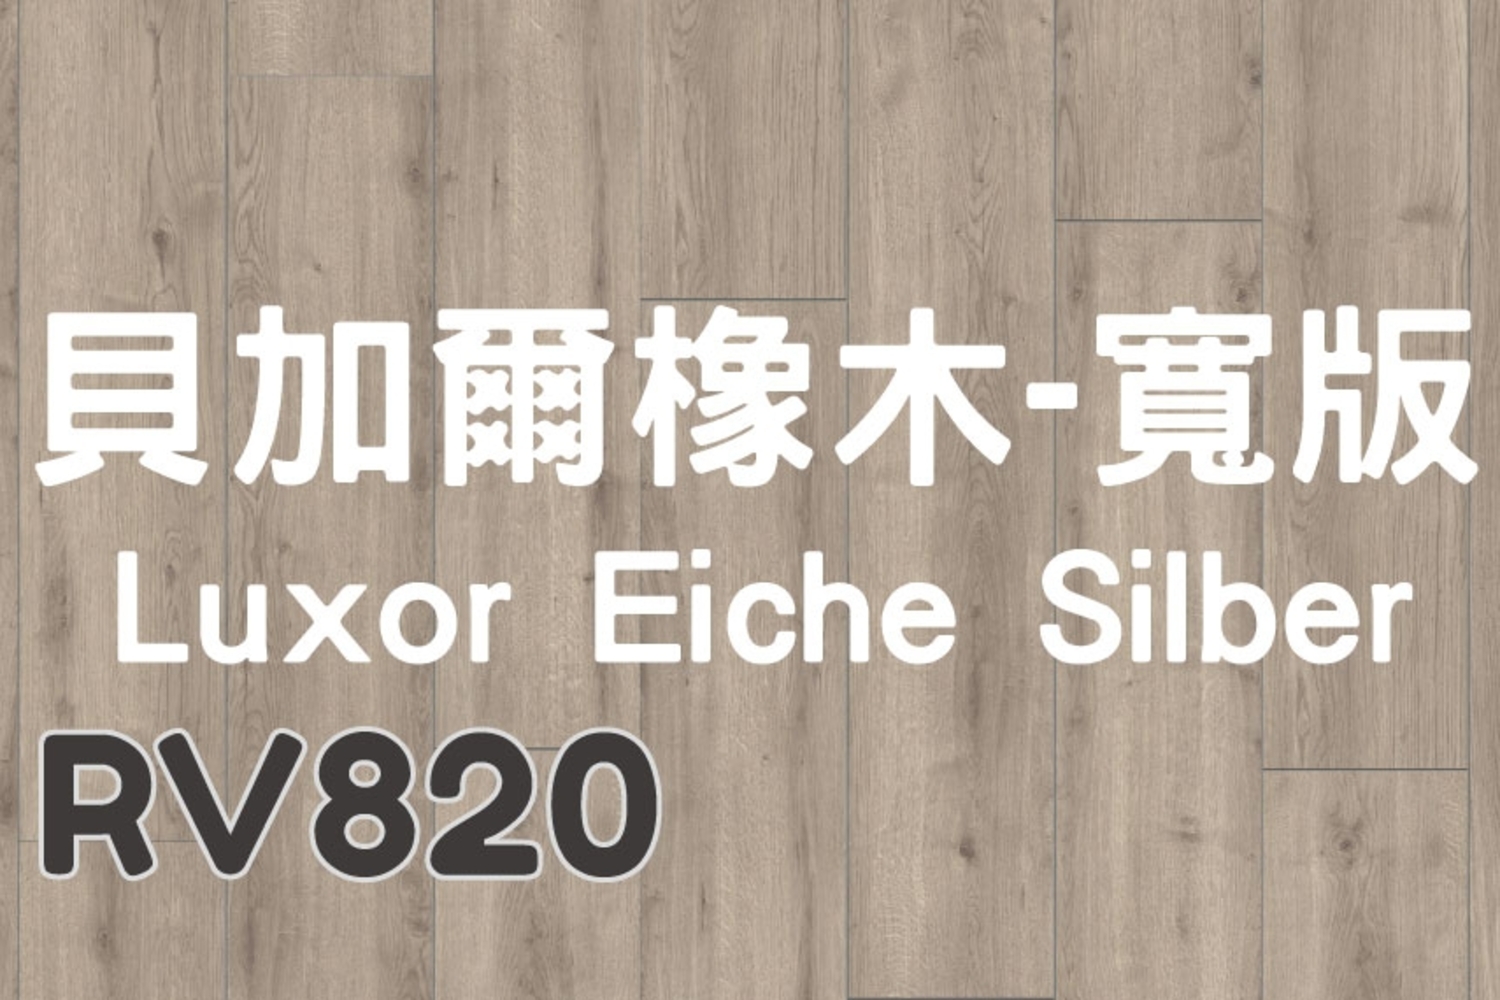 貝加爾橡木-寬版Luxor Eiche Silber